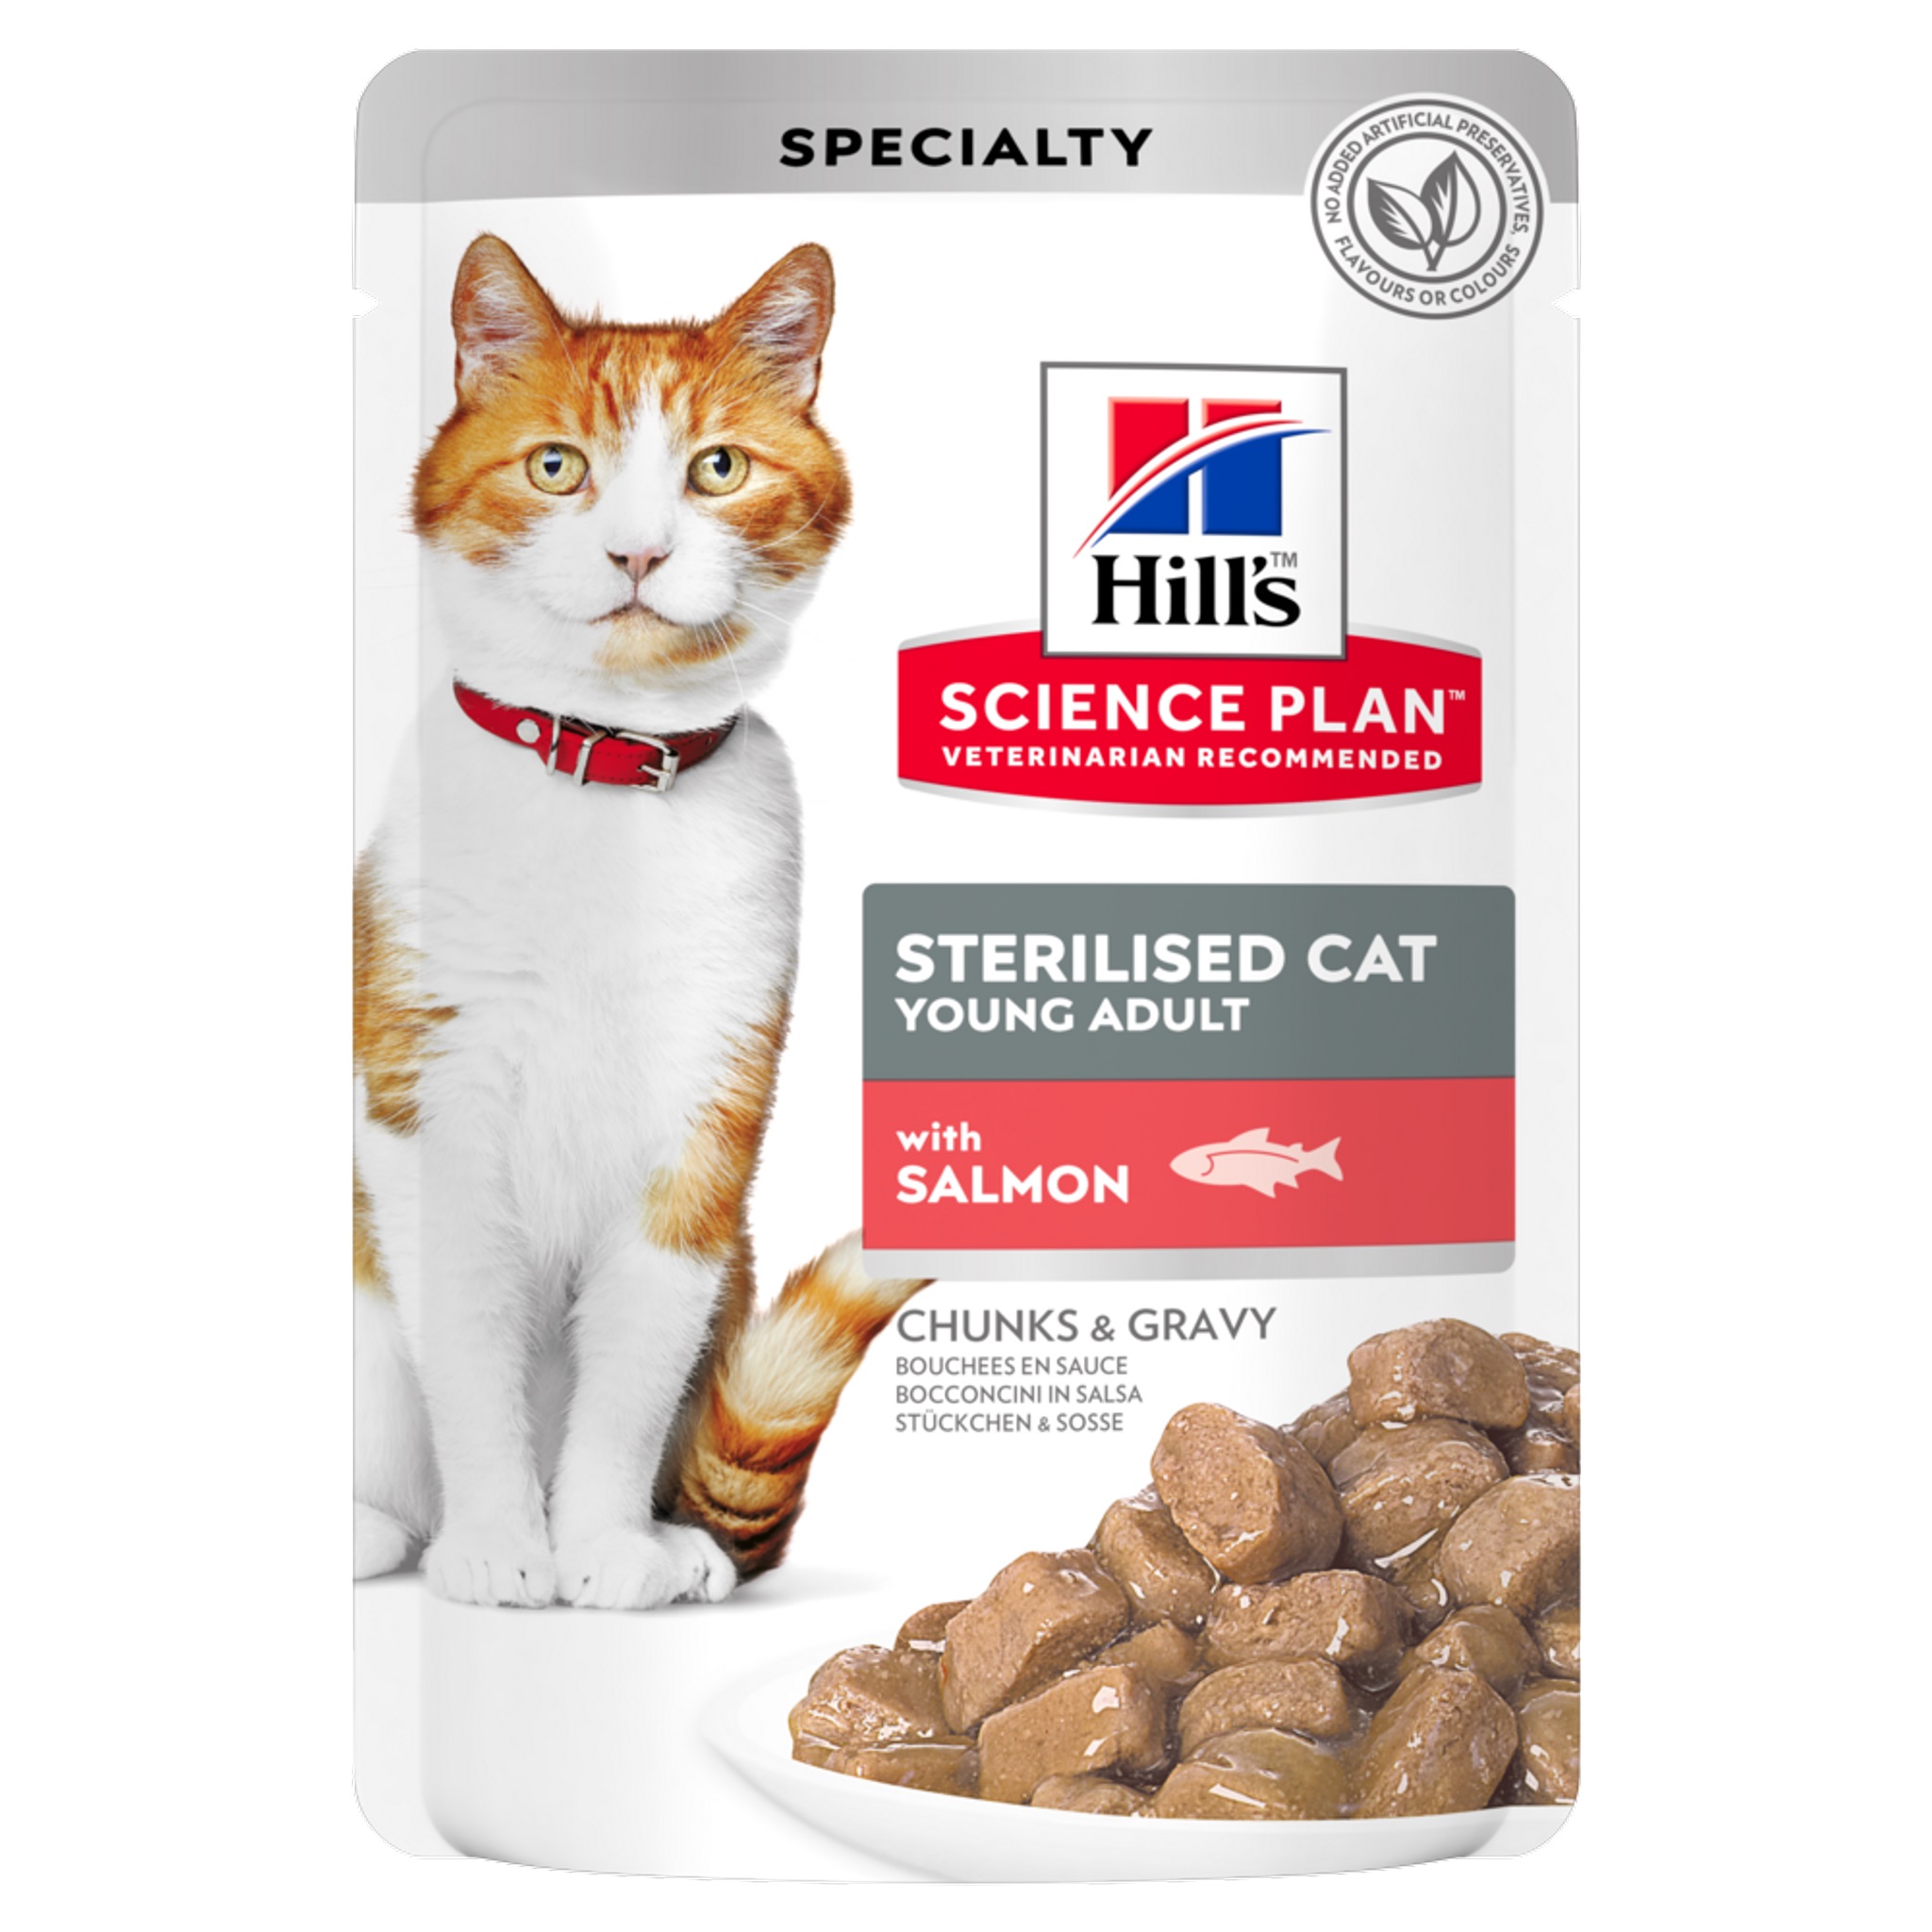 פאוצ' מזון Hill's Science Plan לחתול בוגר Sterilised (עם סלמון), 85 גר' (12 יח')